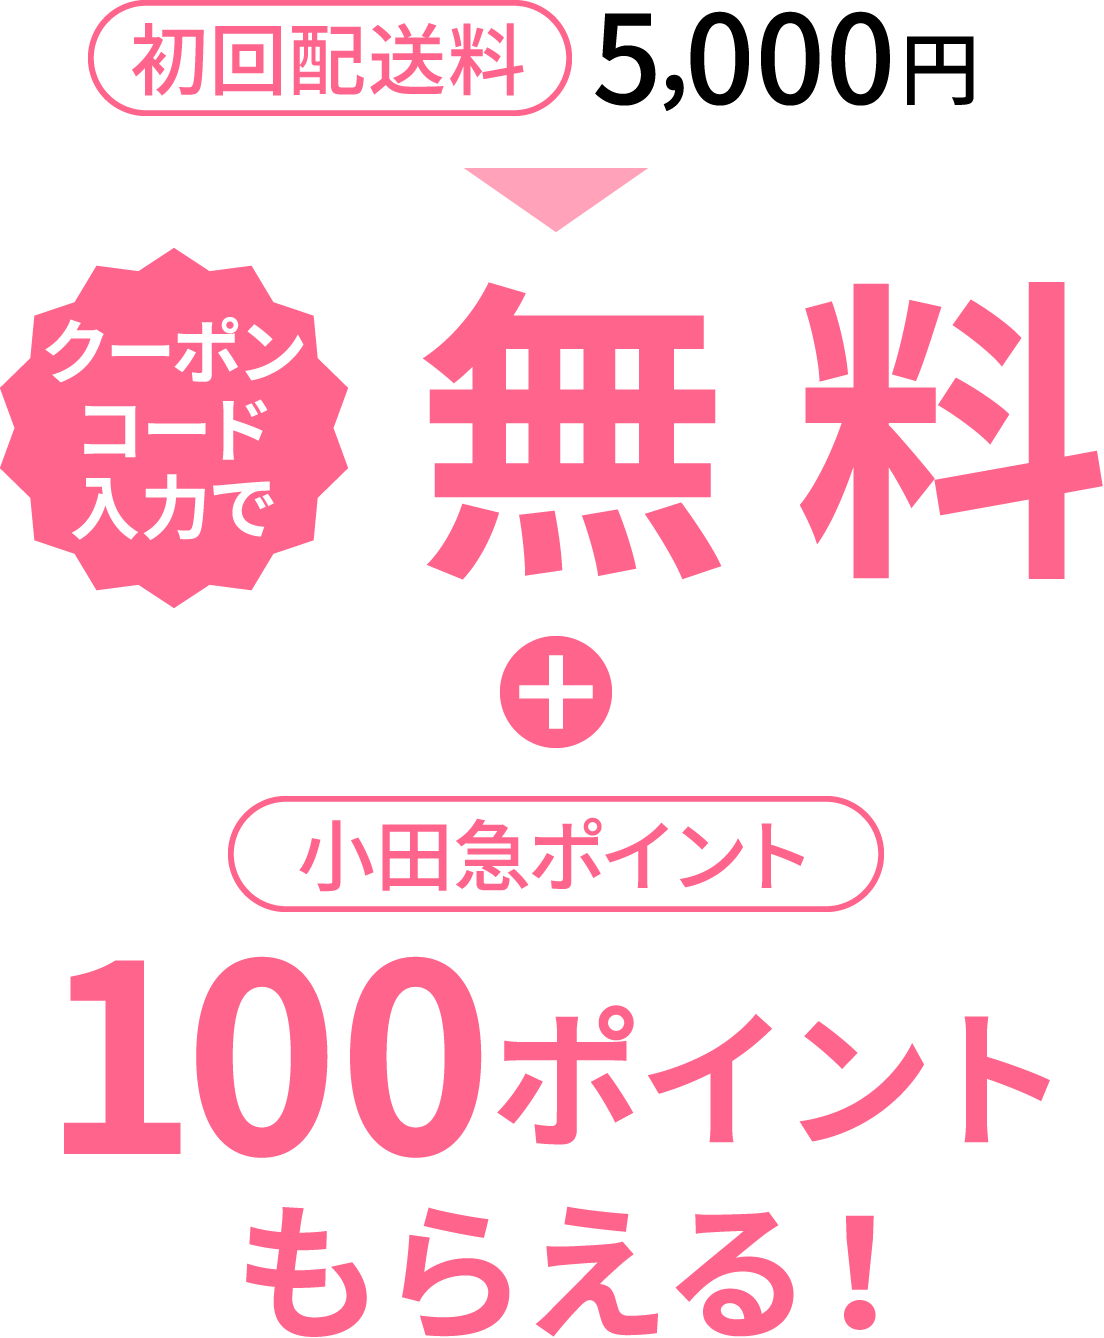 クーポンコード入力で初回配送料5,000円が無料。さらに、小田急ポイント100ポイントプレゼント！